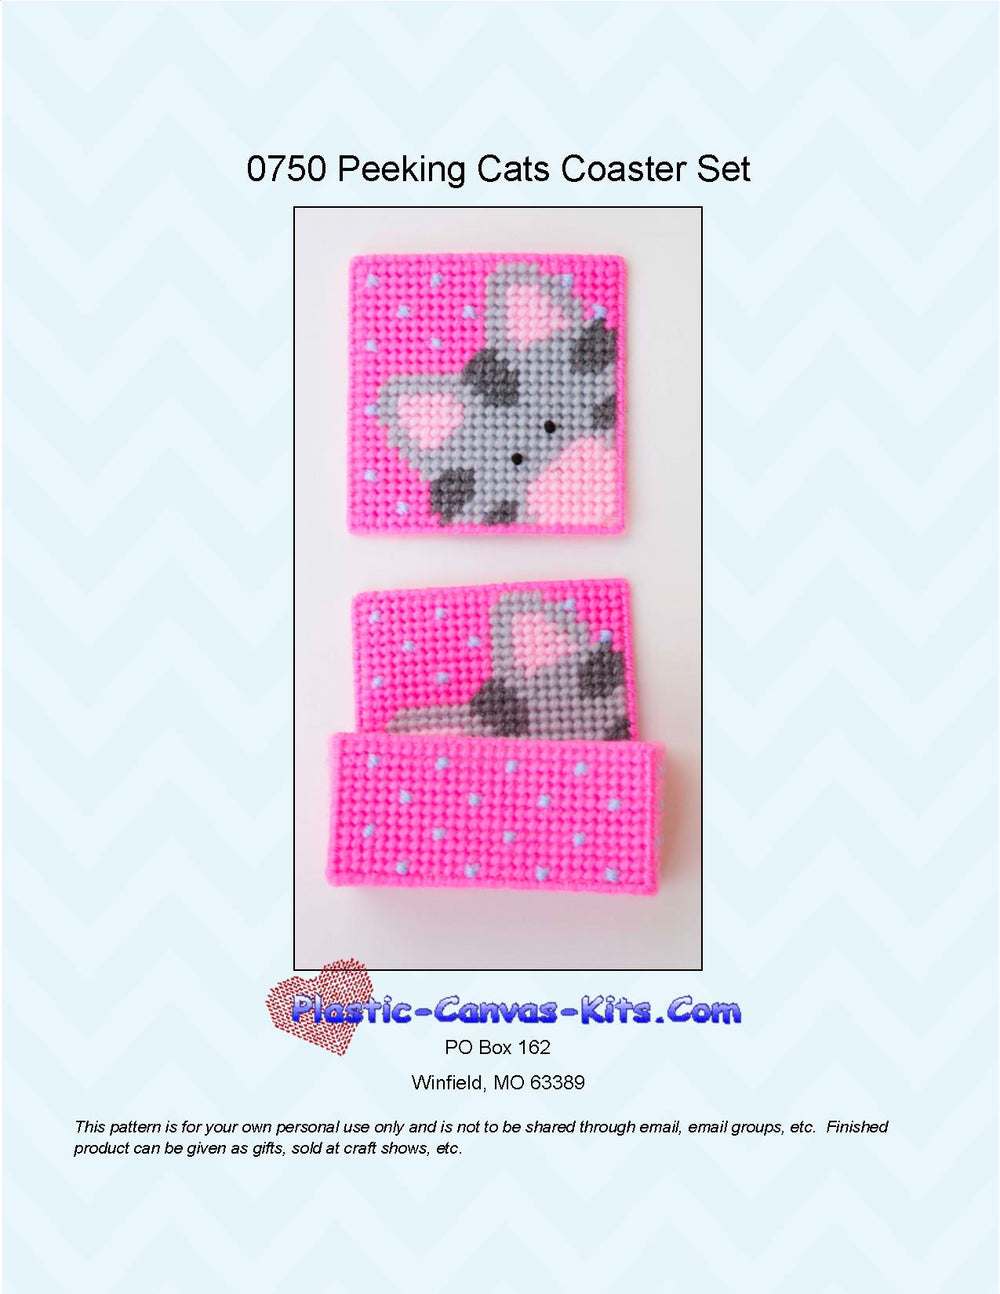 Peeking Cats Coaster Set